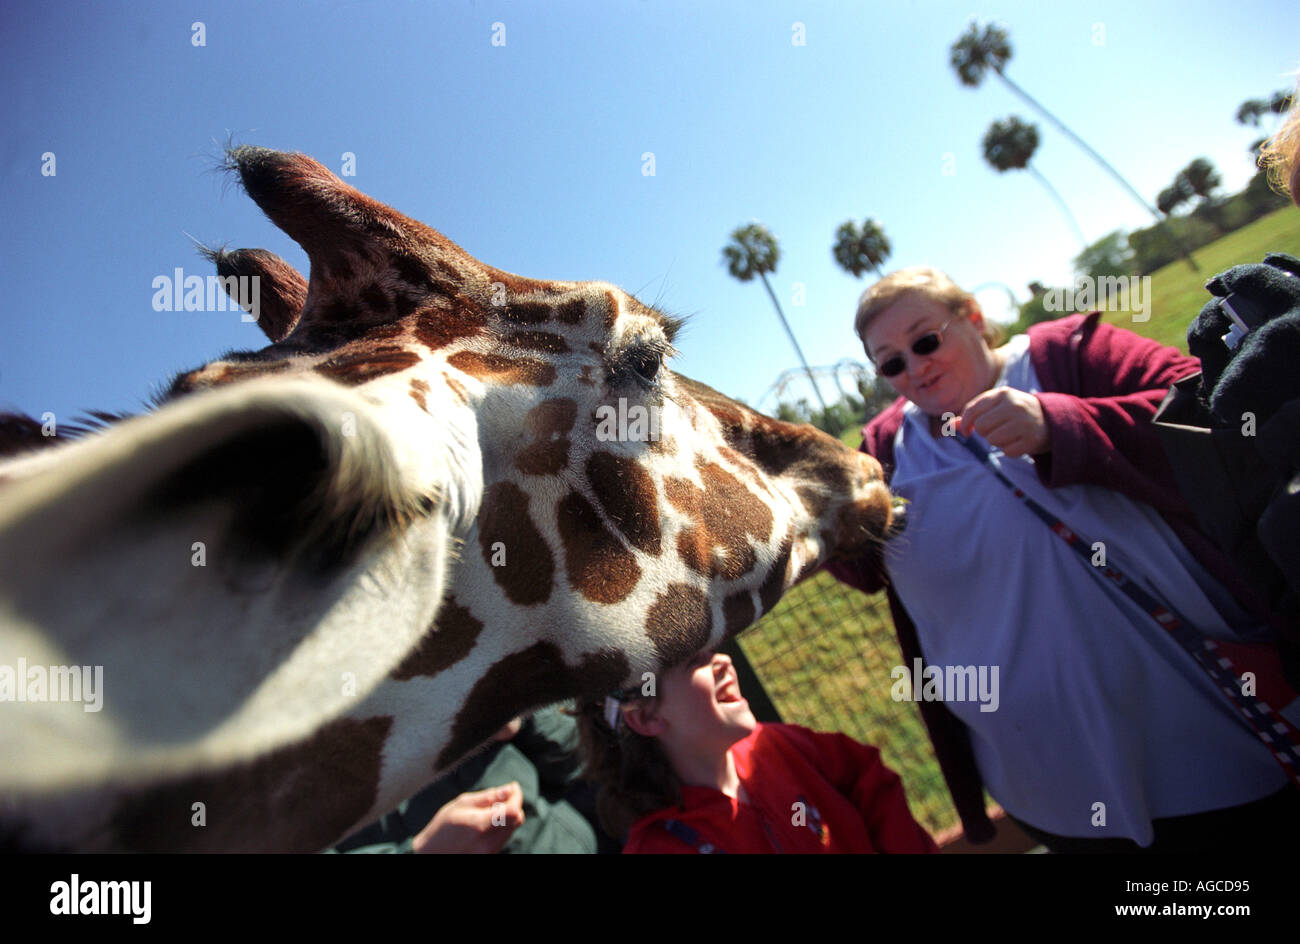 Tourists feed a giraffe at Busch Gardens in Orlando Florida USA Stock Photo